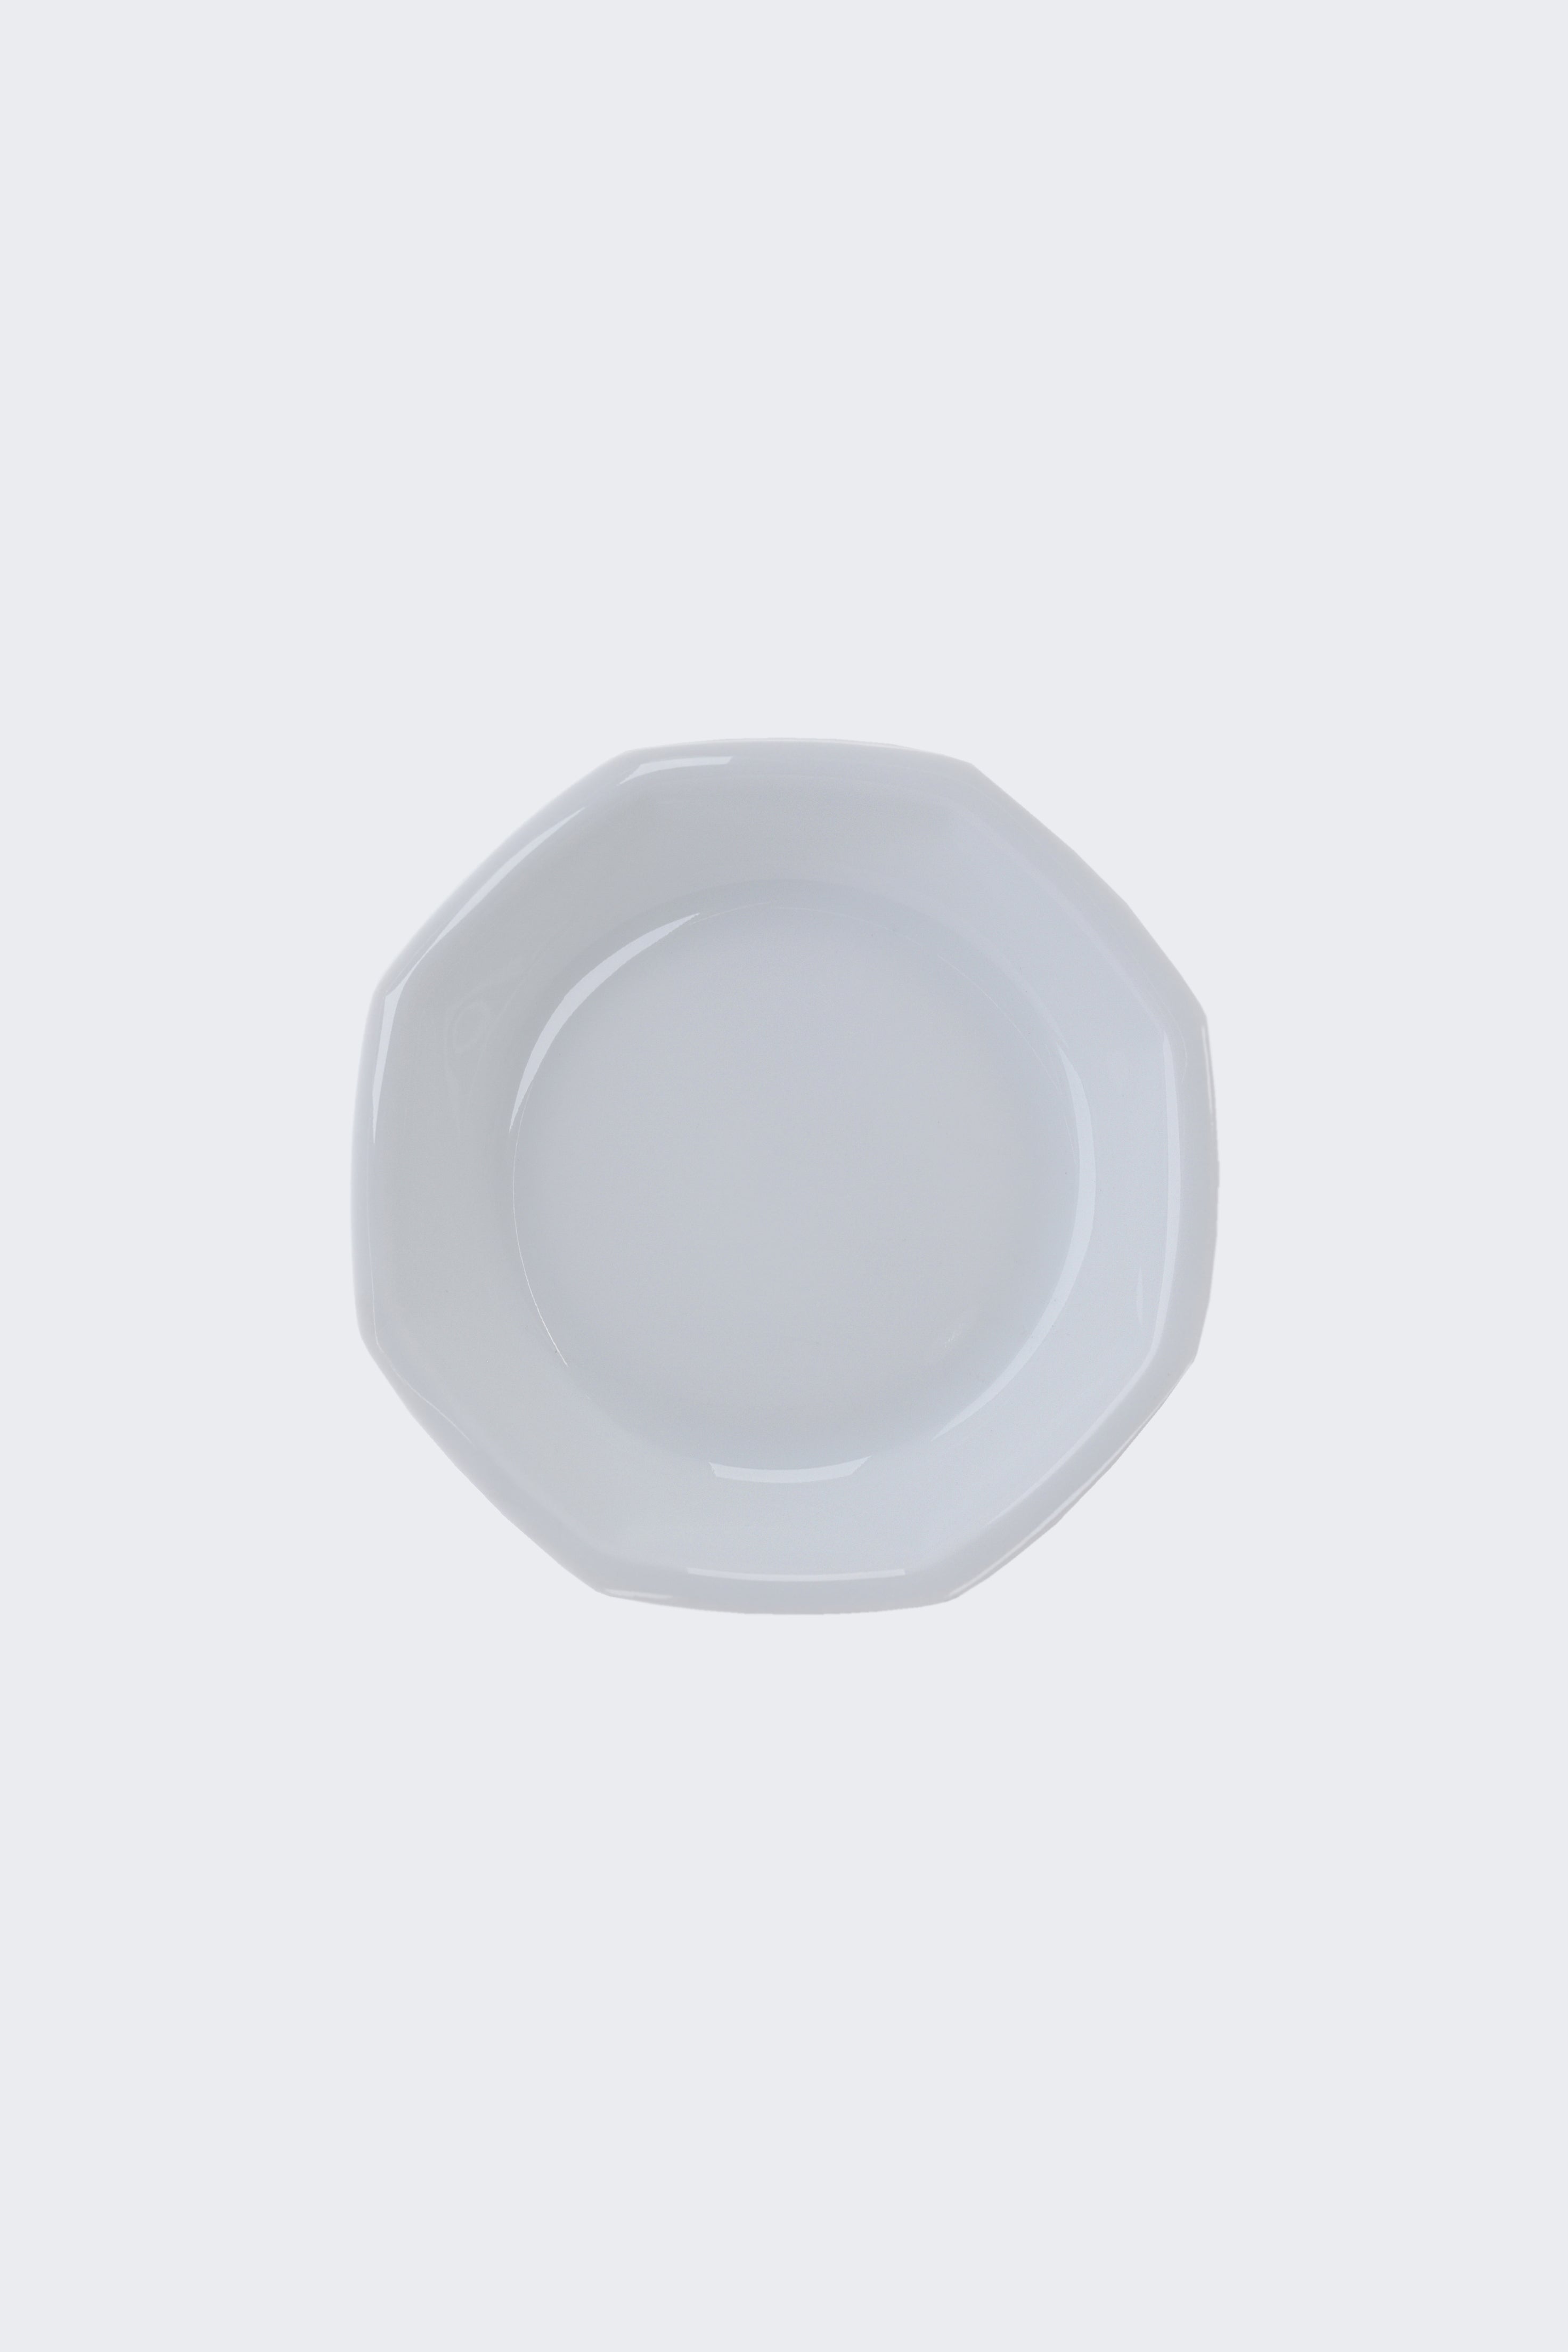 Octangle deep plate white-Ogre-[interior]-[design]-KIOSK48TH